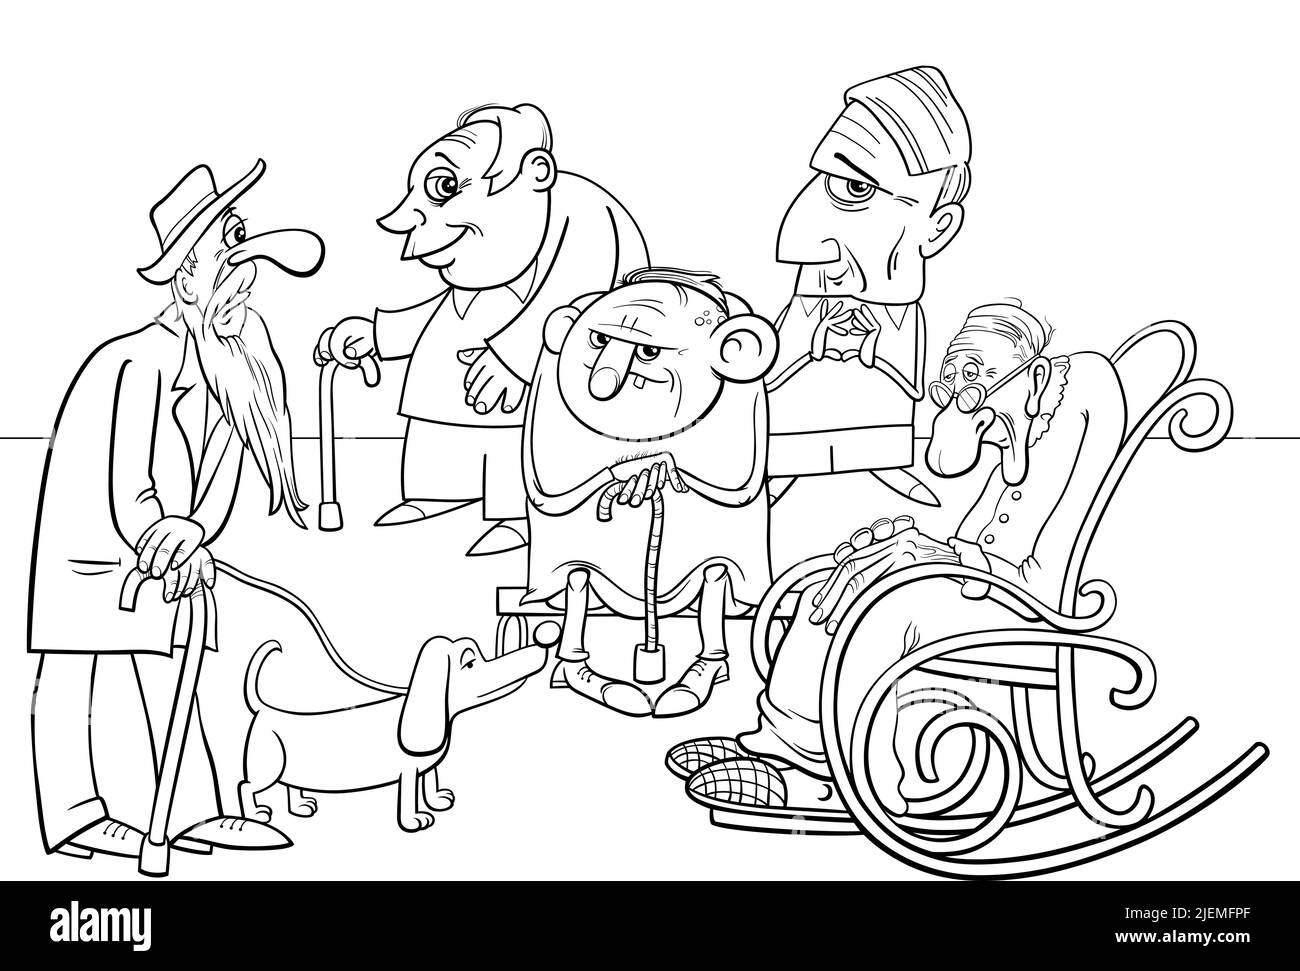 Illustration de dessin animé de personnes âgées ou de personnes âgées groupe de caractères page de coloriage Illustration de Vecteur